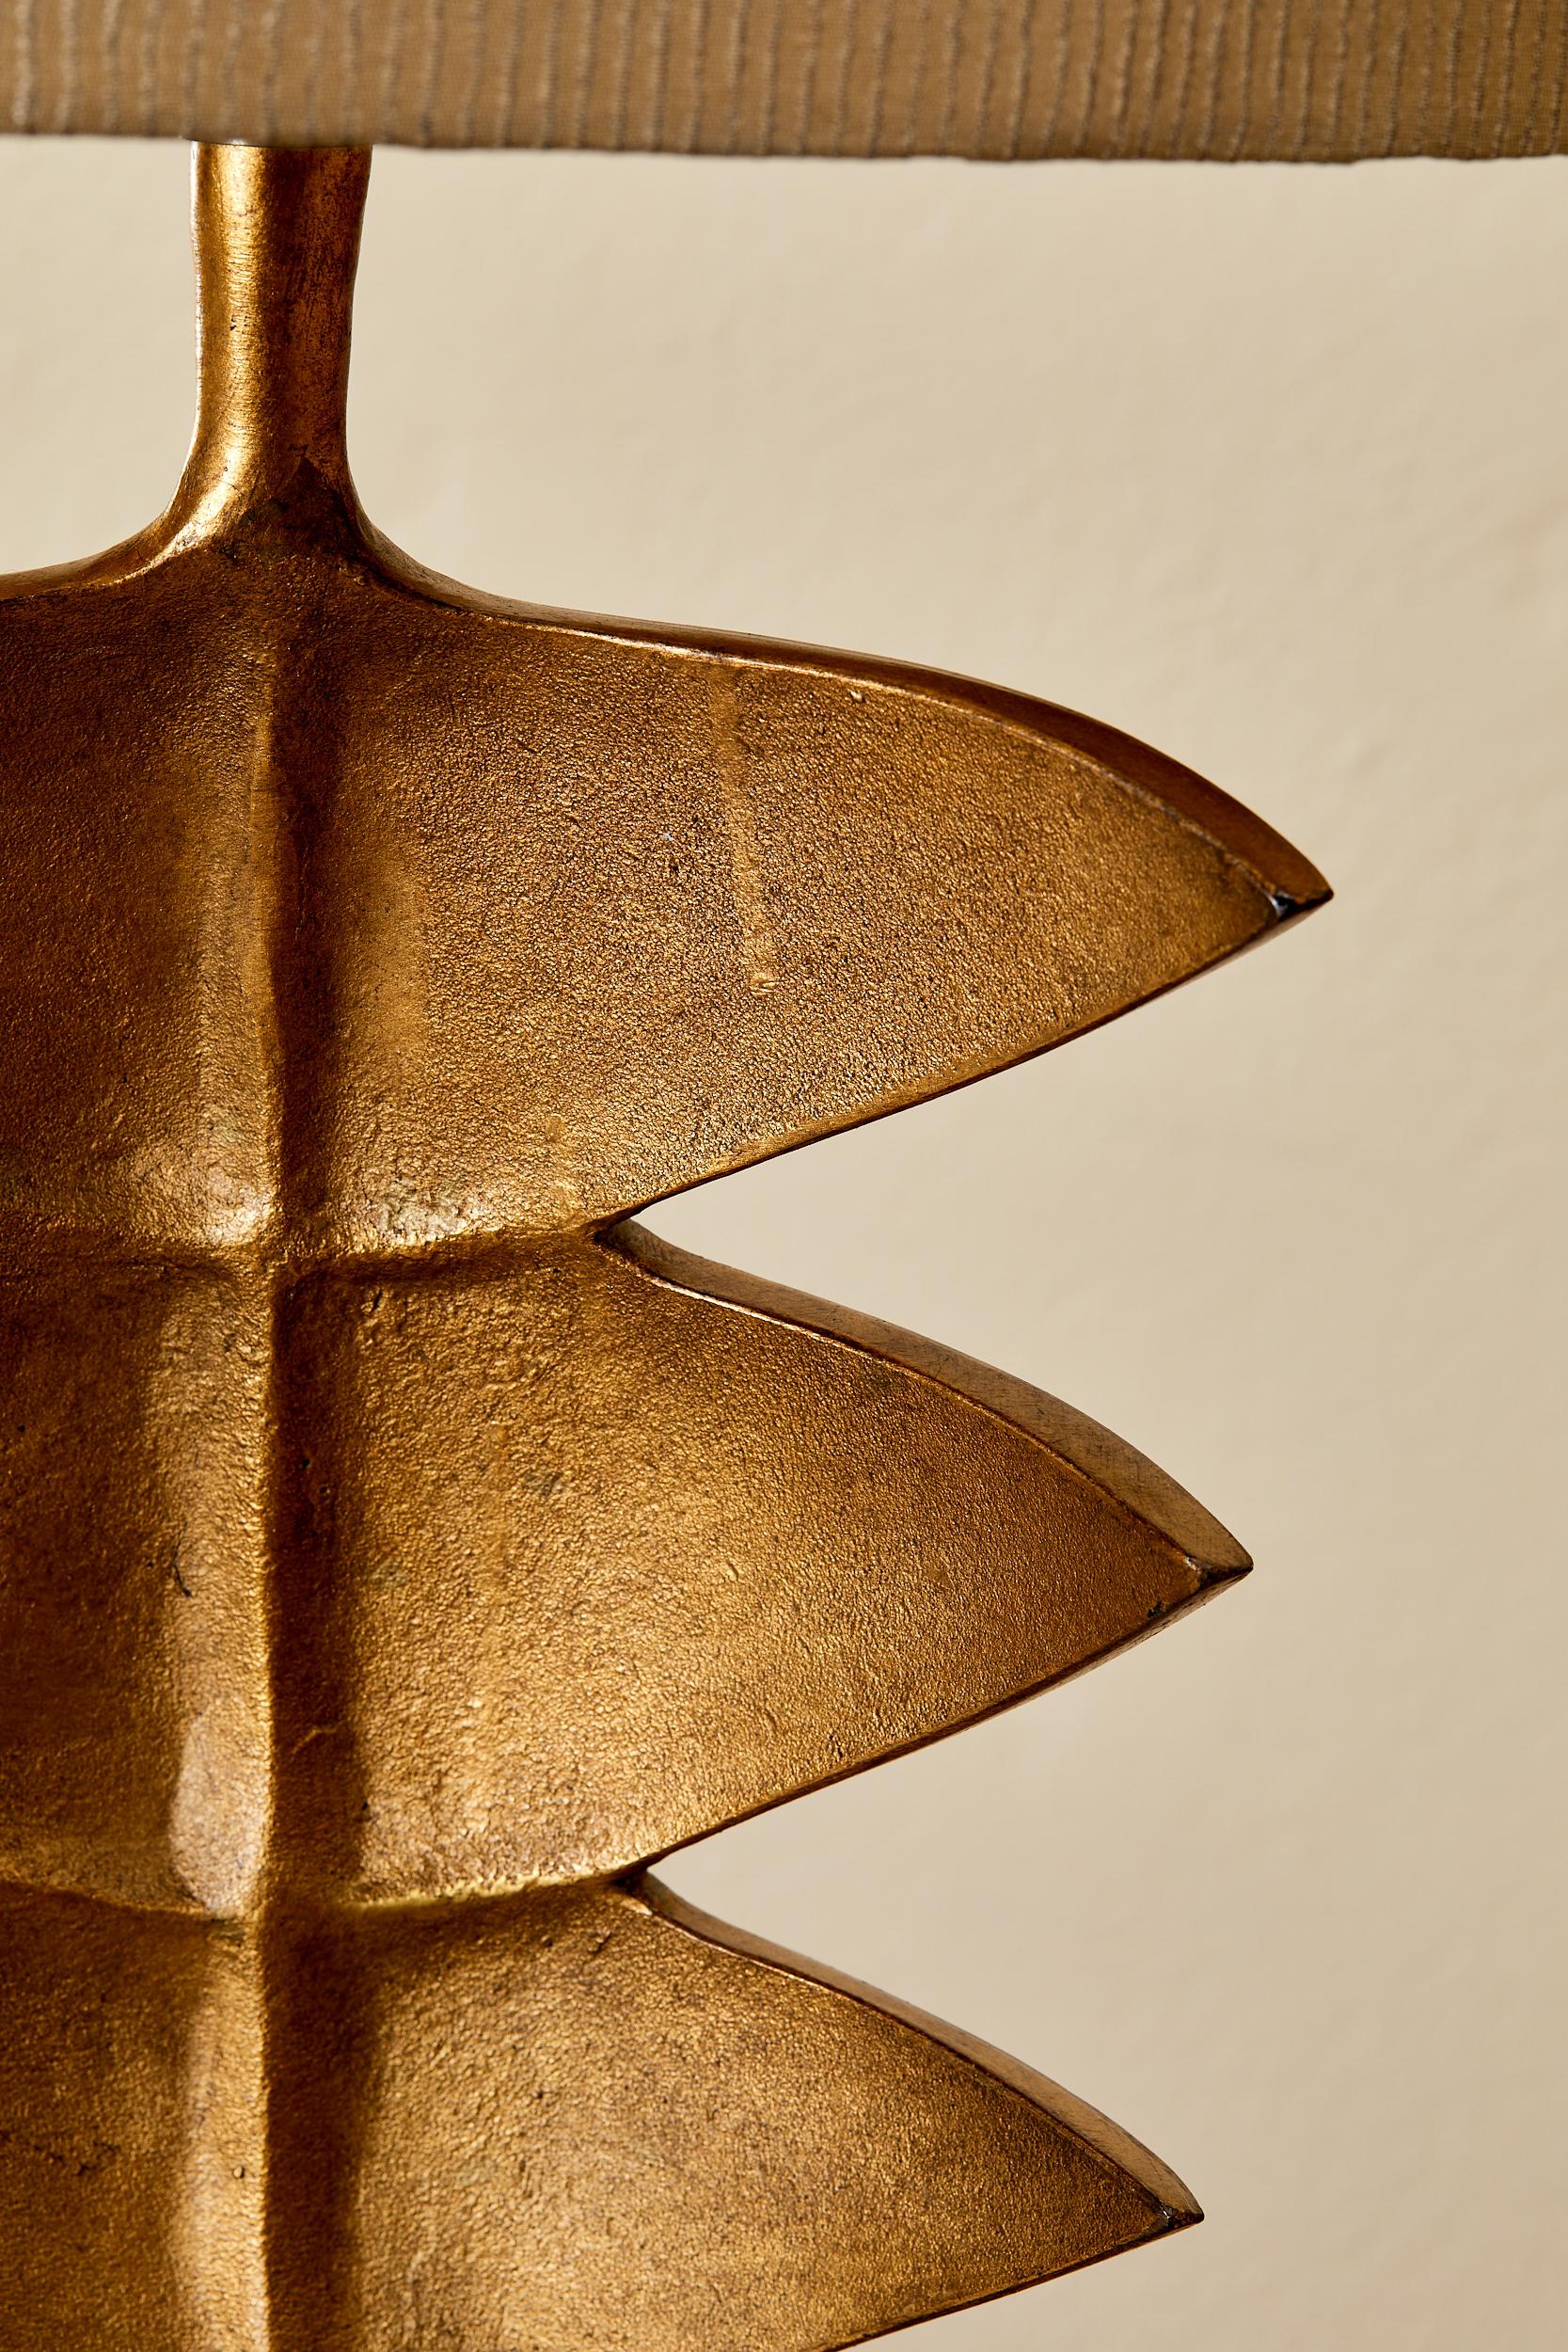 Modern Porto Romana, lampe de table en résine à l'imitation du bronze, circa 2000.